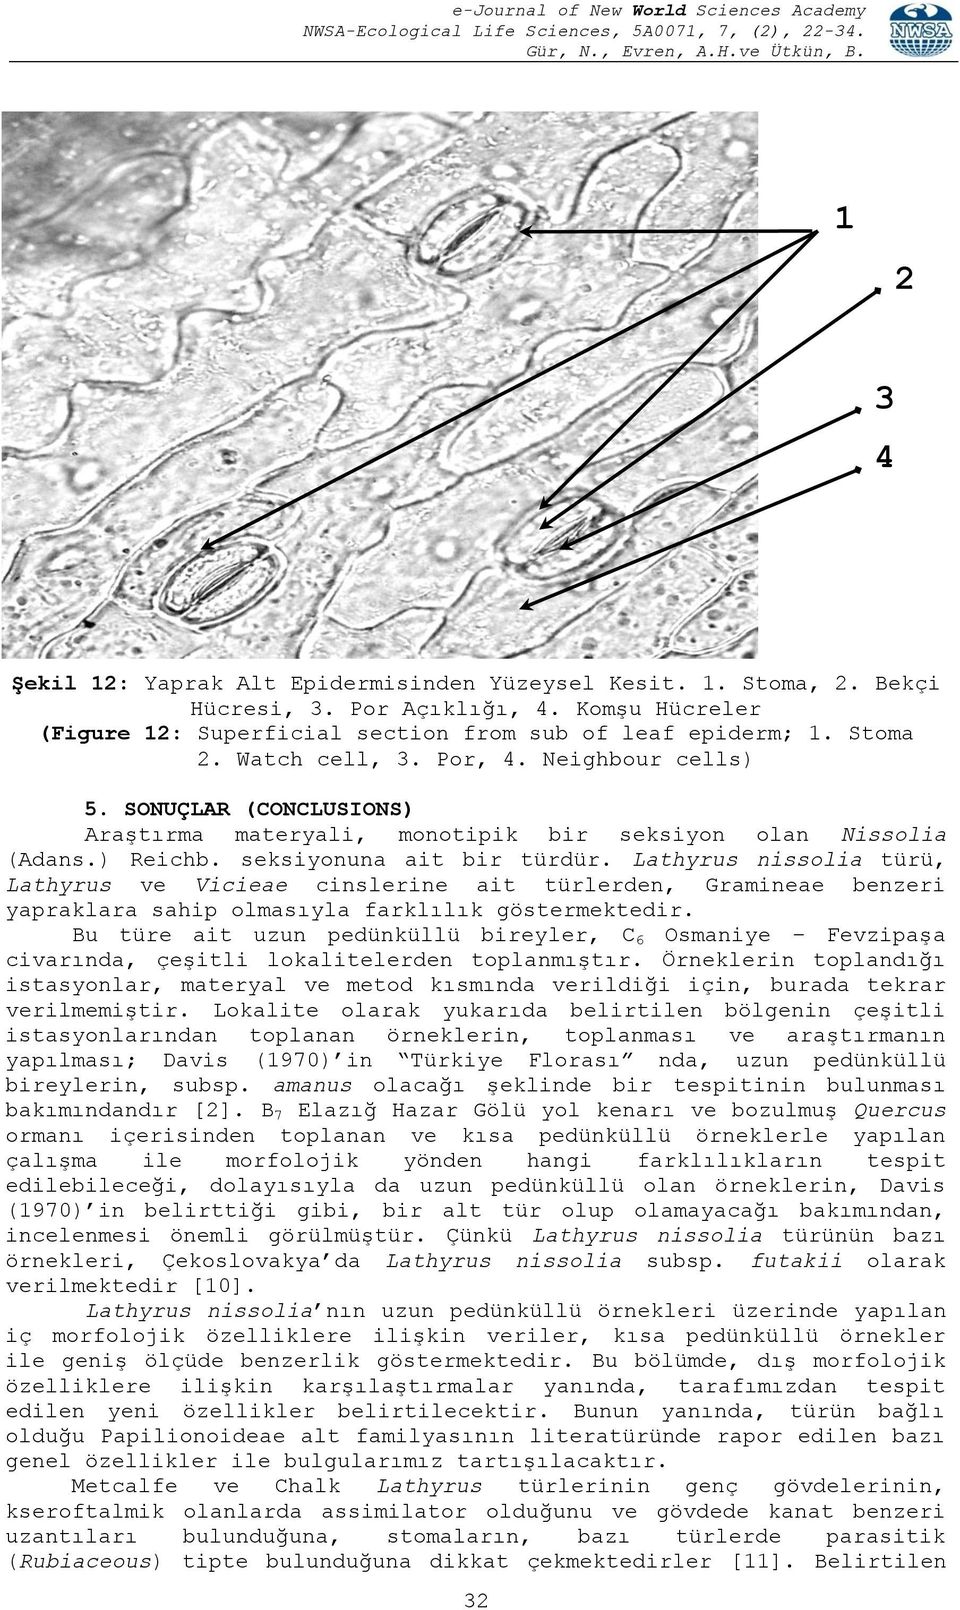 Lathyrus nissolia türü, Lathyrus ve Vicieae cinslerine ait türlerden, Gramineae benzeri yapraklara sahip olmasıyla farklılık göstermektedir.